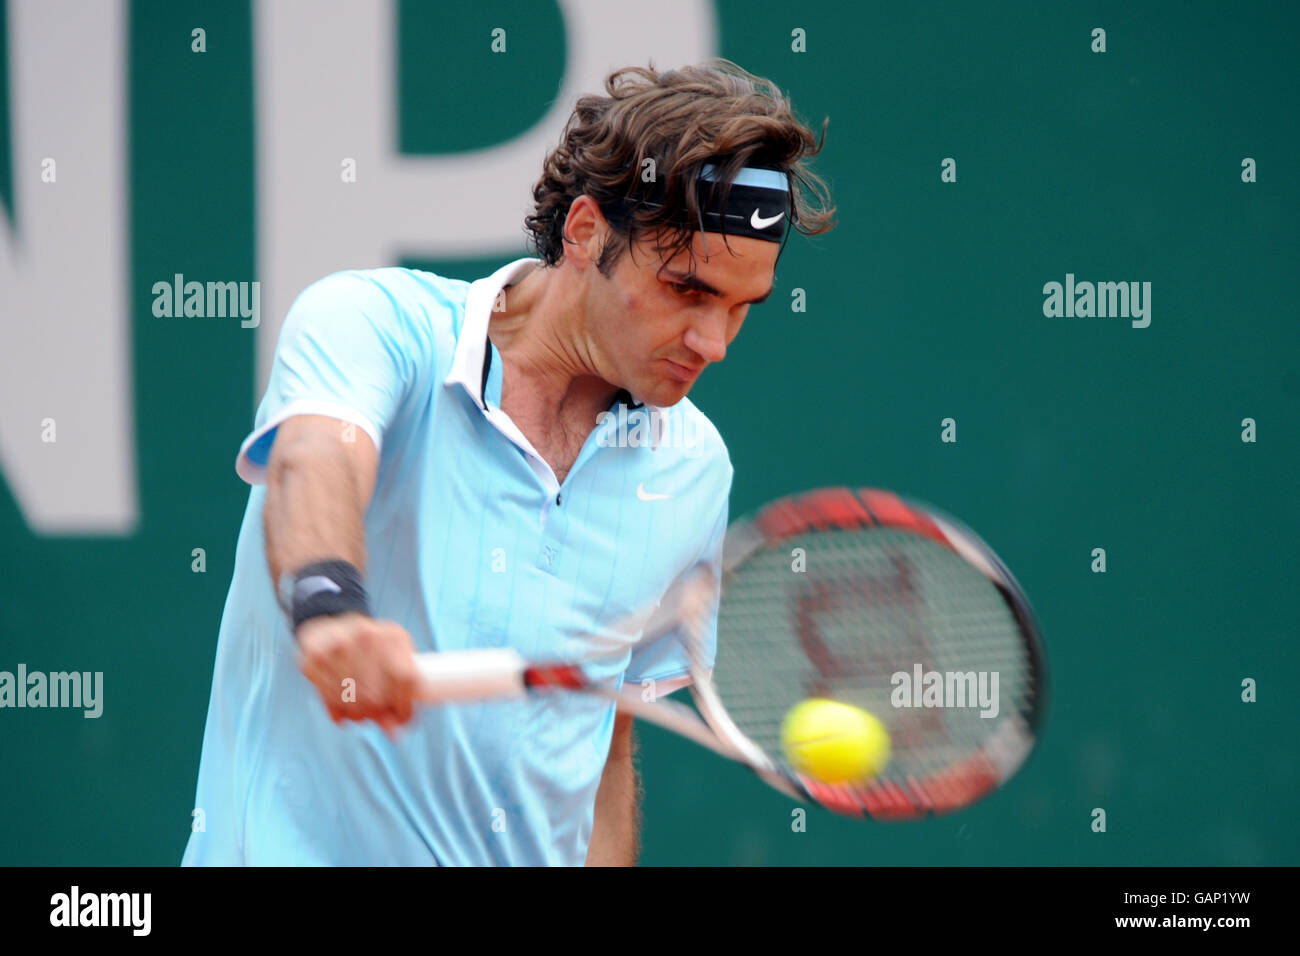 Der Schweizer Roger Federer im Einsatz gegen den spanischen Ruben Ramirez Hidalgo Stockfoto